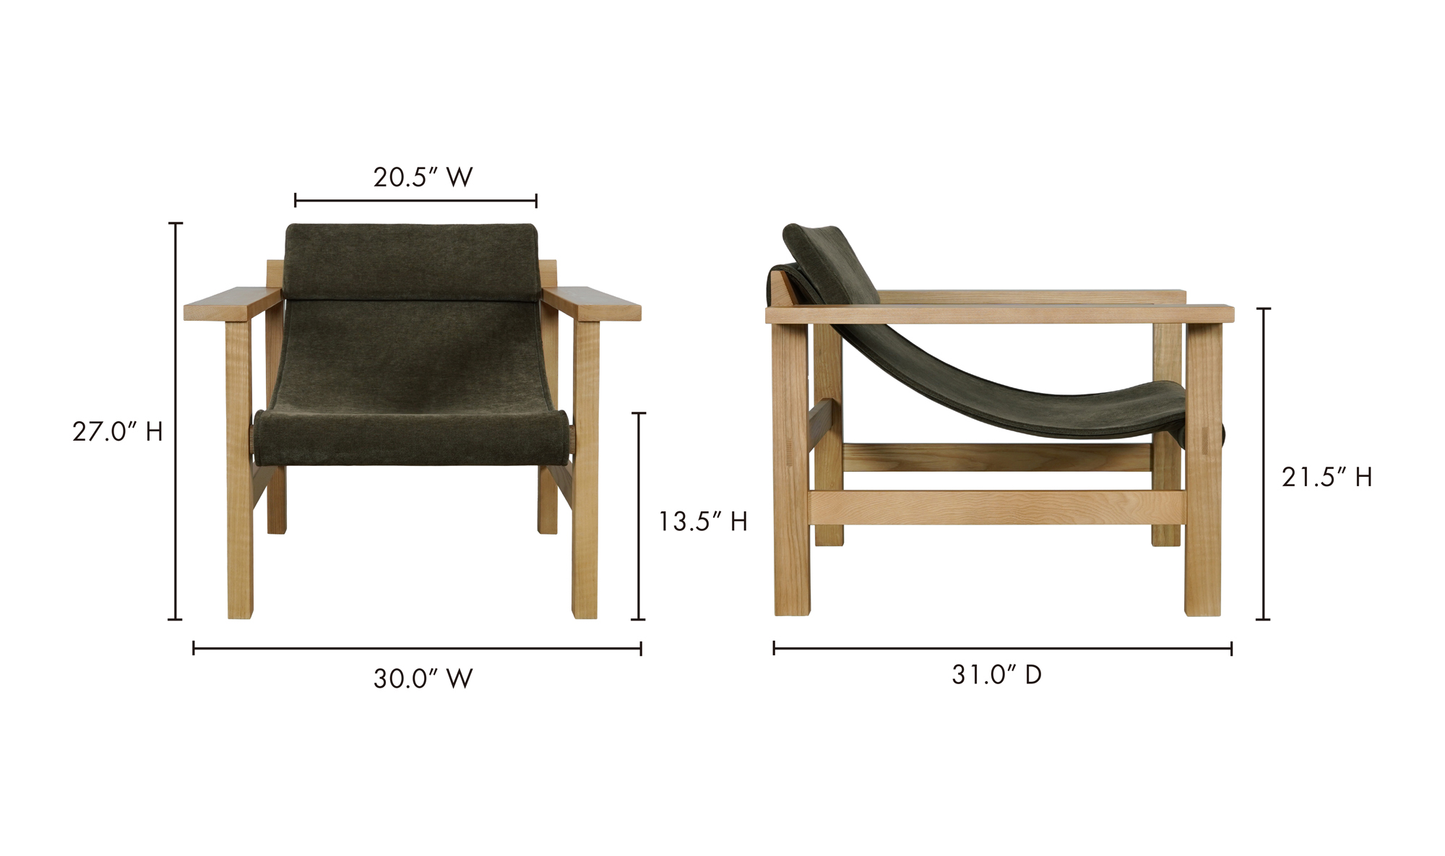 Annex Lounge Chair Cedar Green